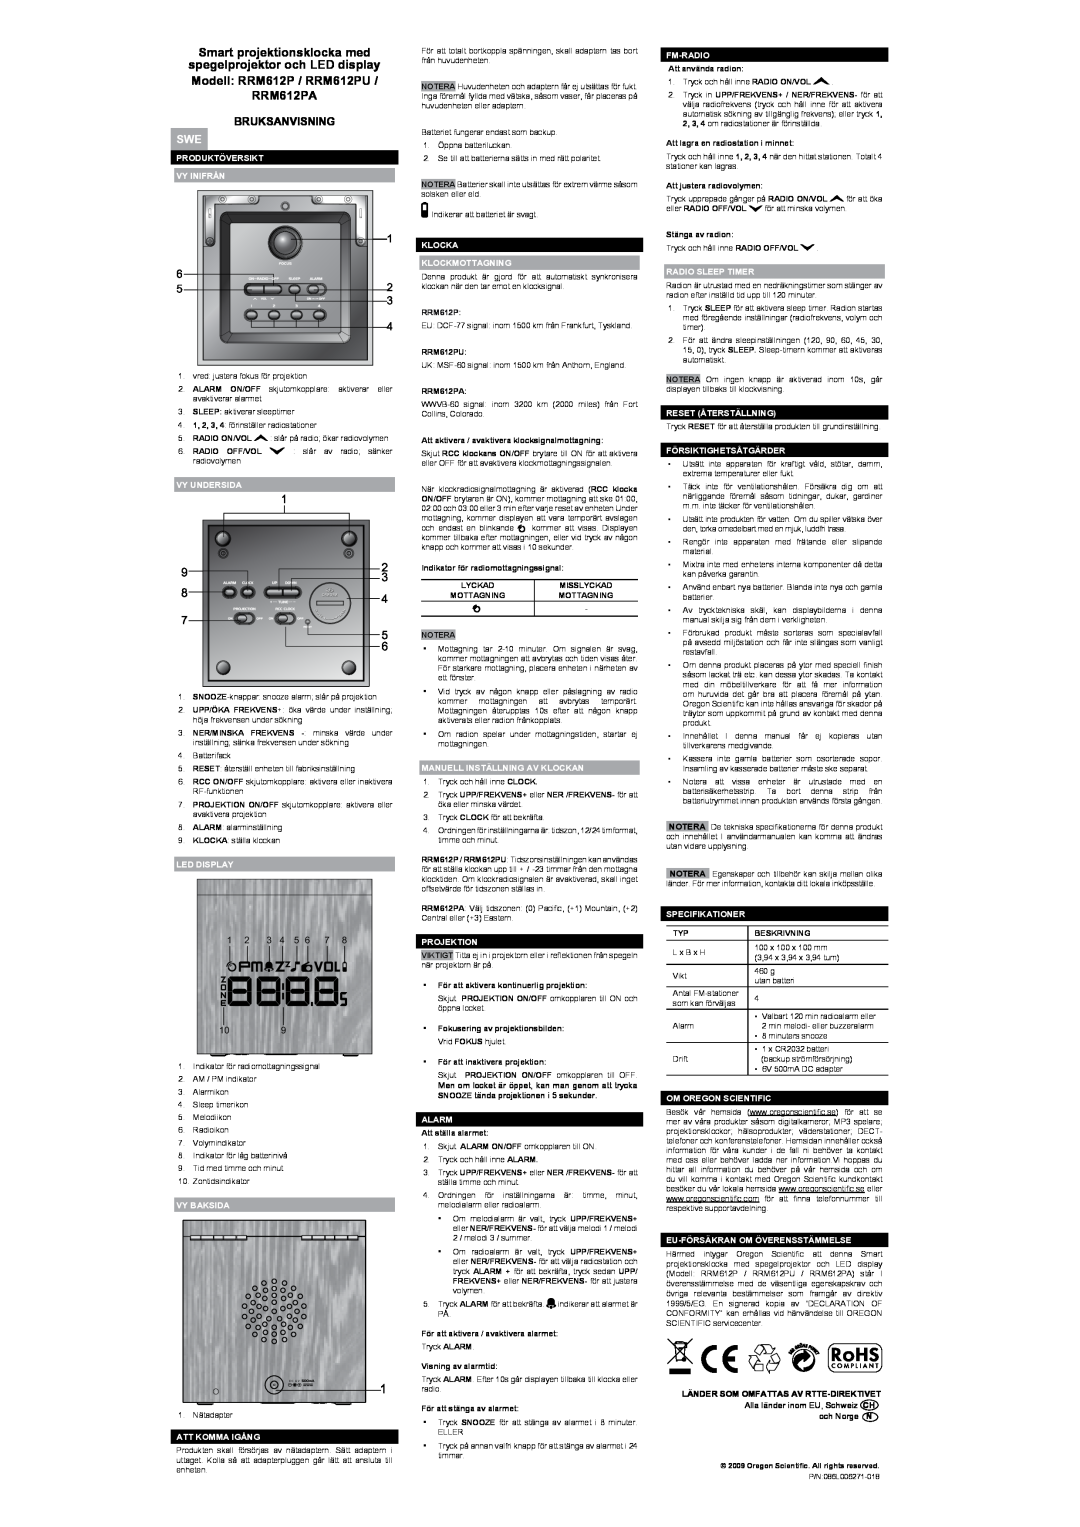 Oregon Scientific RRM612P user manual Smart projektionsklocka med, Bruksanvisning 